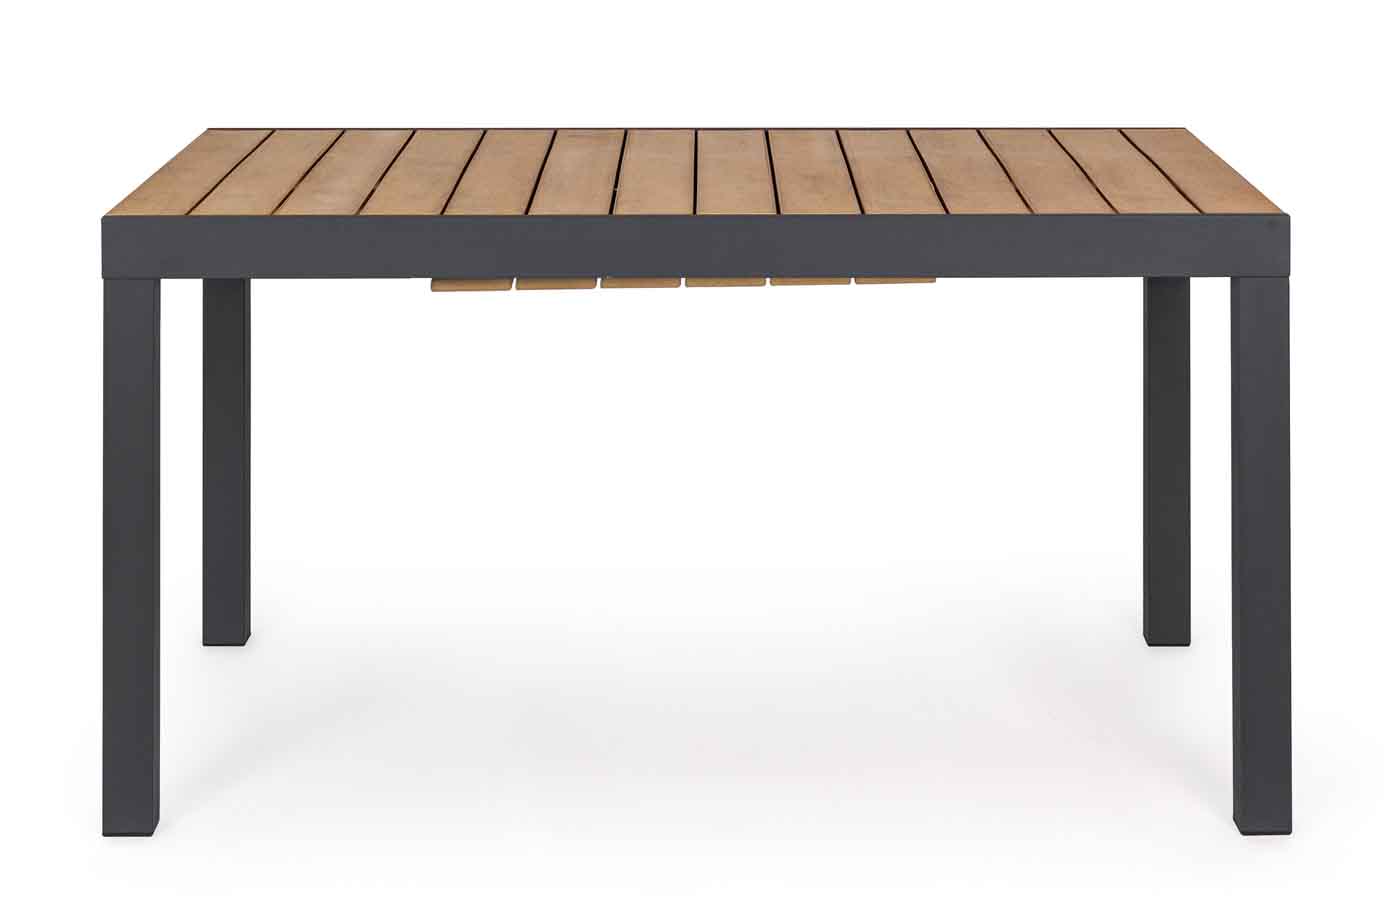 Gartentisch Elias mit einer Ausziefunktion, hergestellt aus Aluminium und Polywood